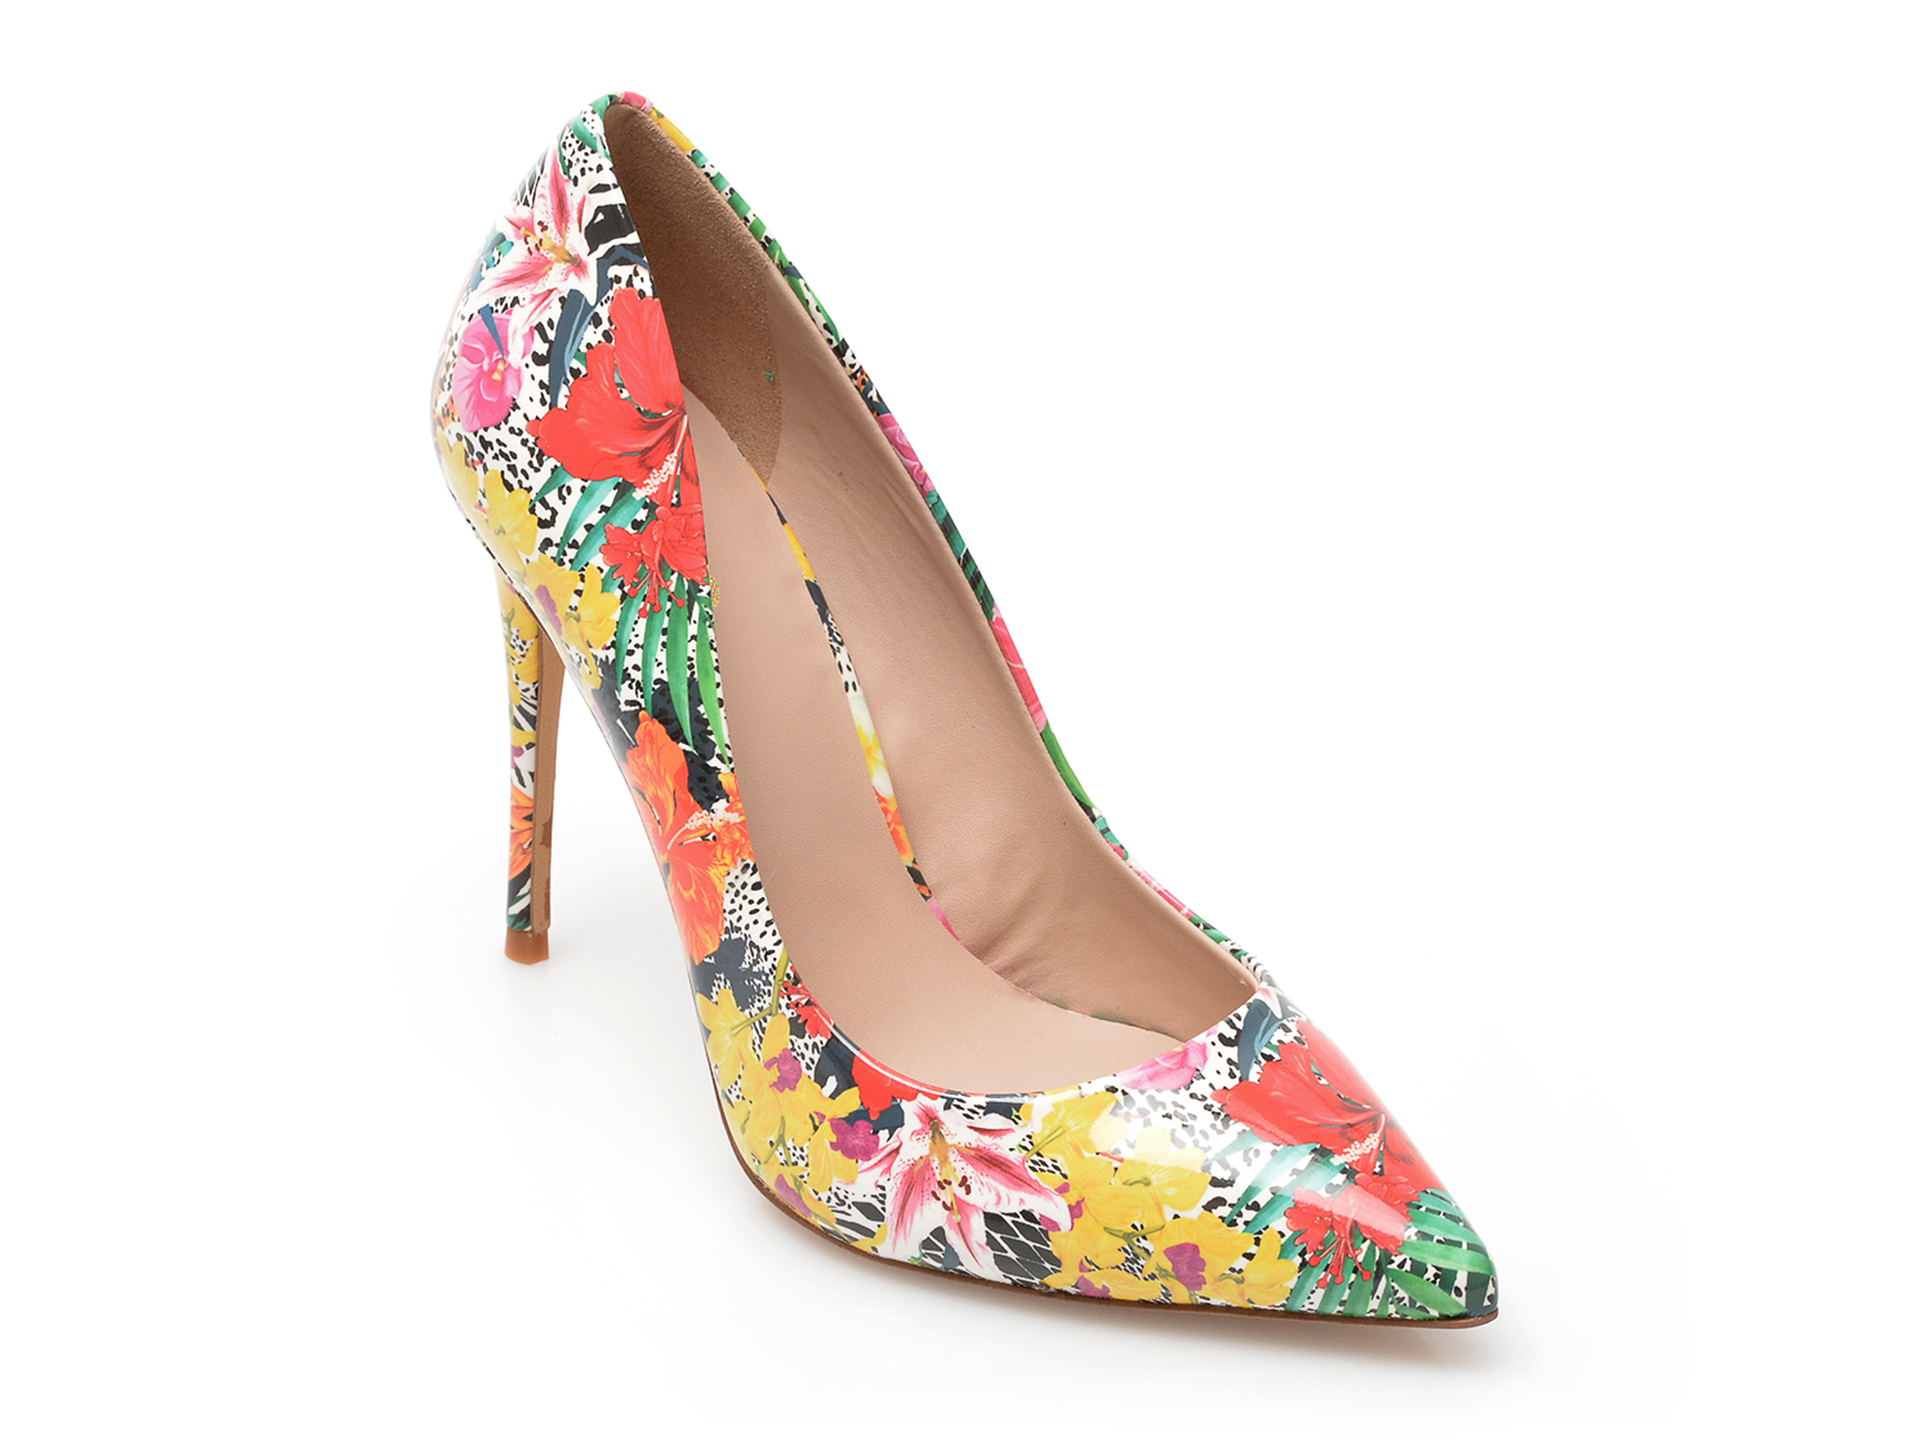 Pantofi ALDO multicolori, STESSY_960, din piele ecologica